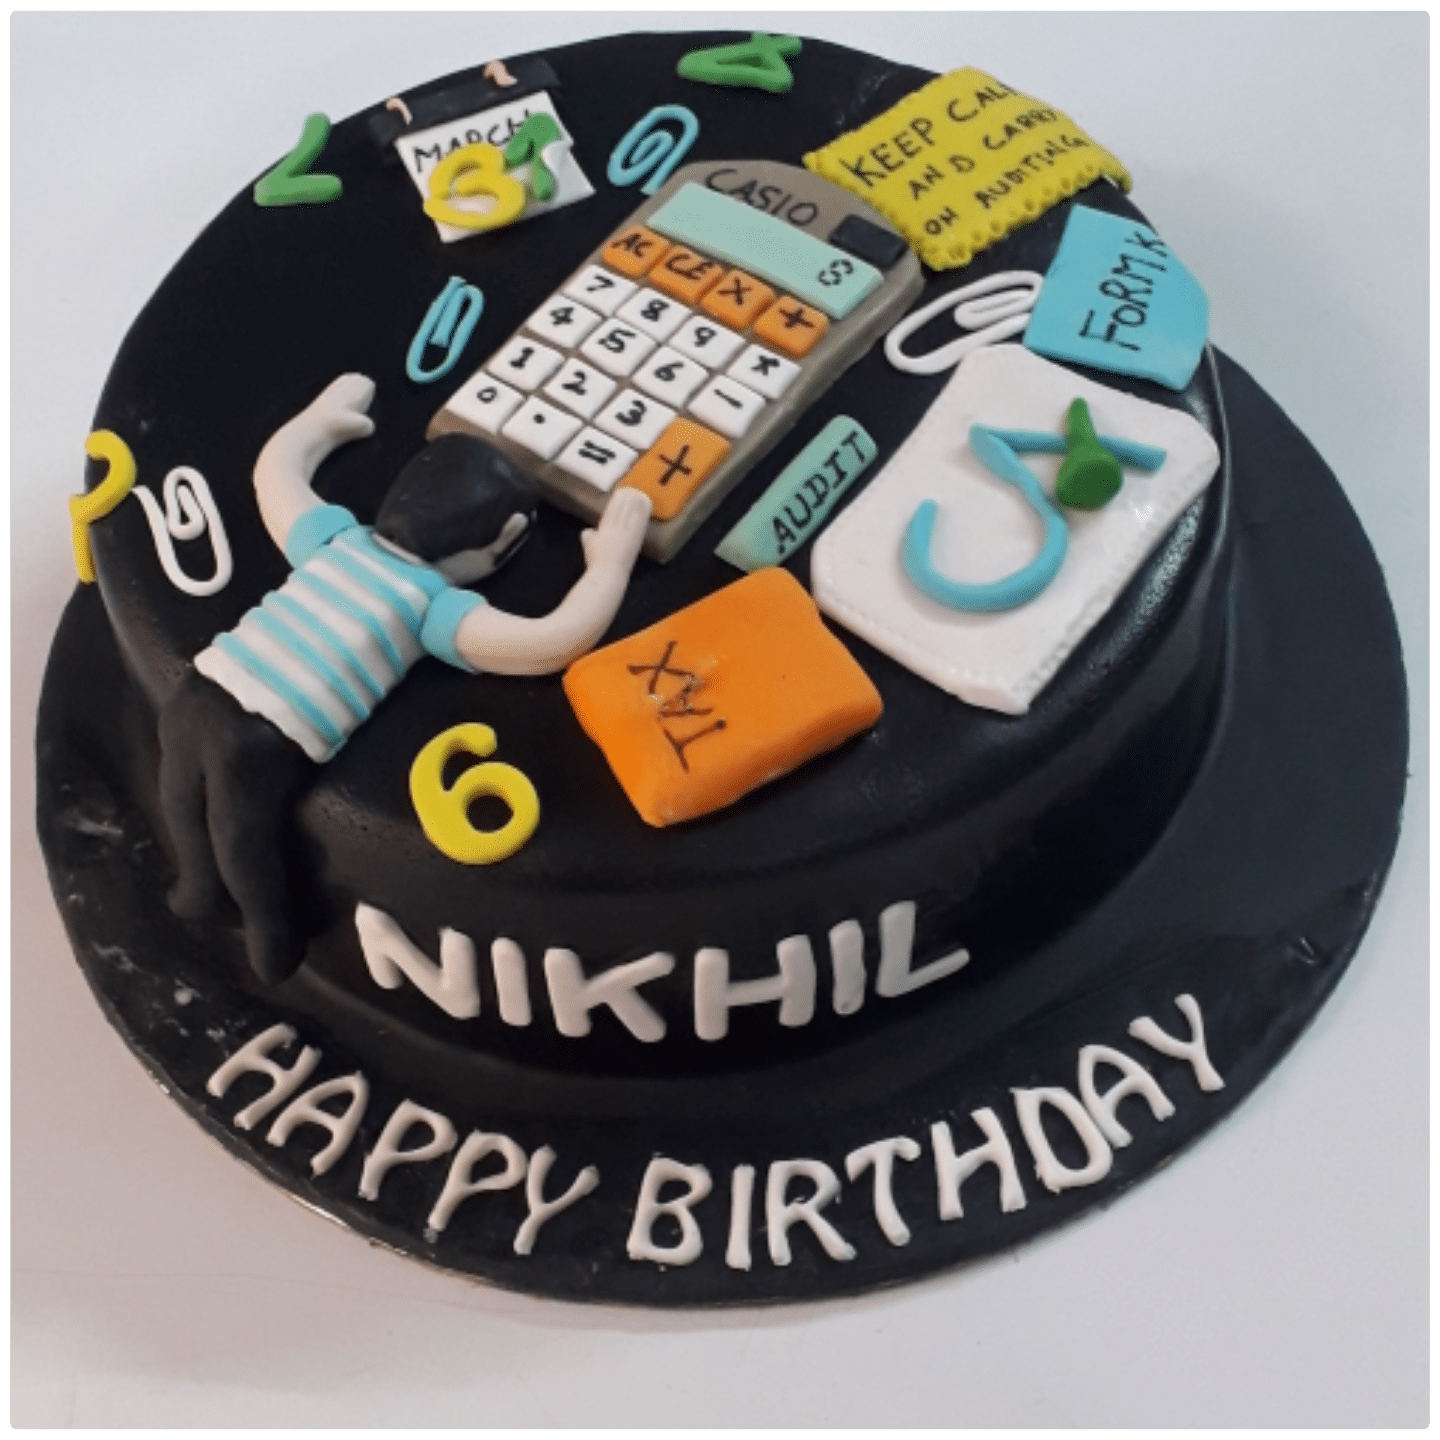 pubg birthday cake design ideas decorating tutorial video | Cake designs  birthday, Cake design, Cake designs